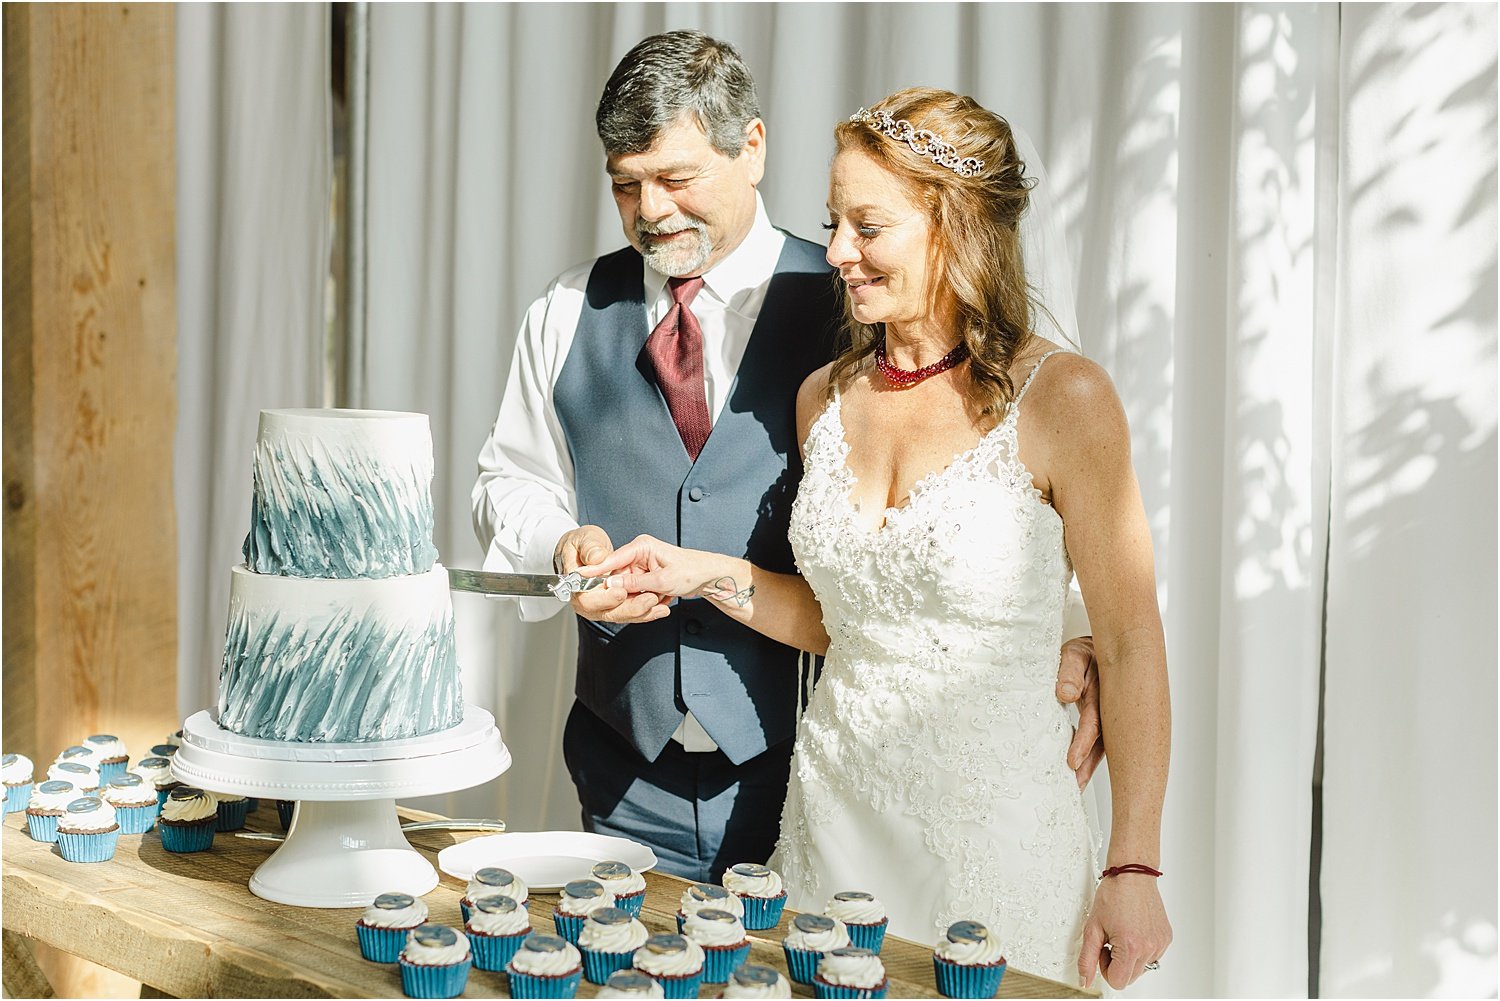 Newlyweds Cut Their Wedding Cake